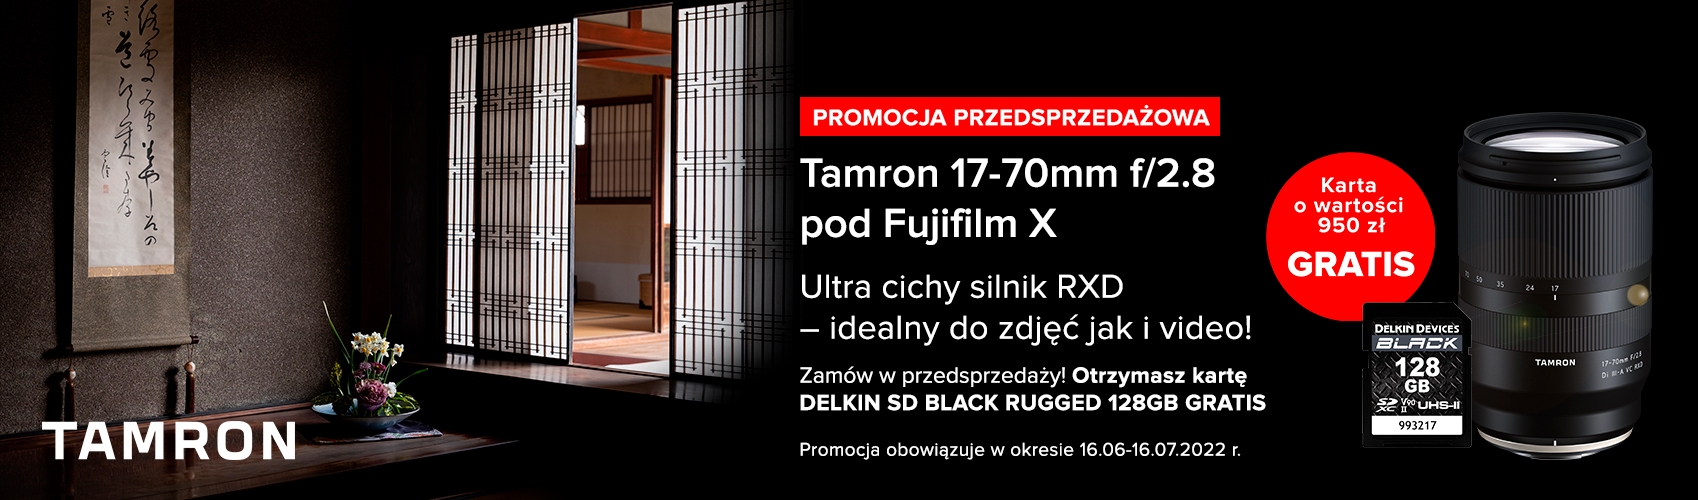 Kup w przedsprzedaży  Tamron 17-70 f/2.8 (Fujifilm) i odbierz kartę 128 GB gratis